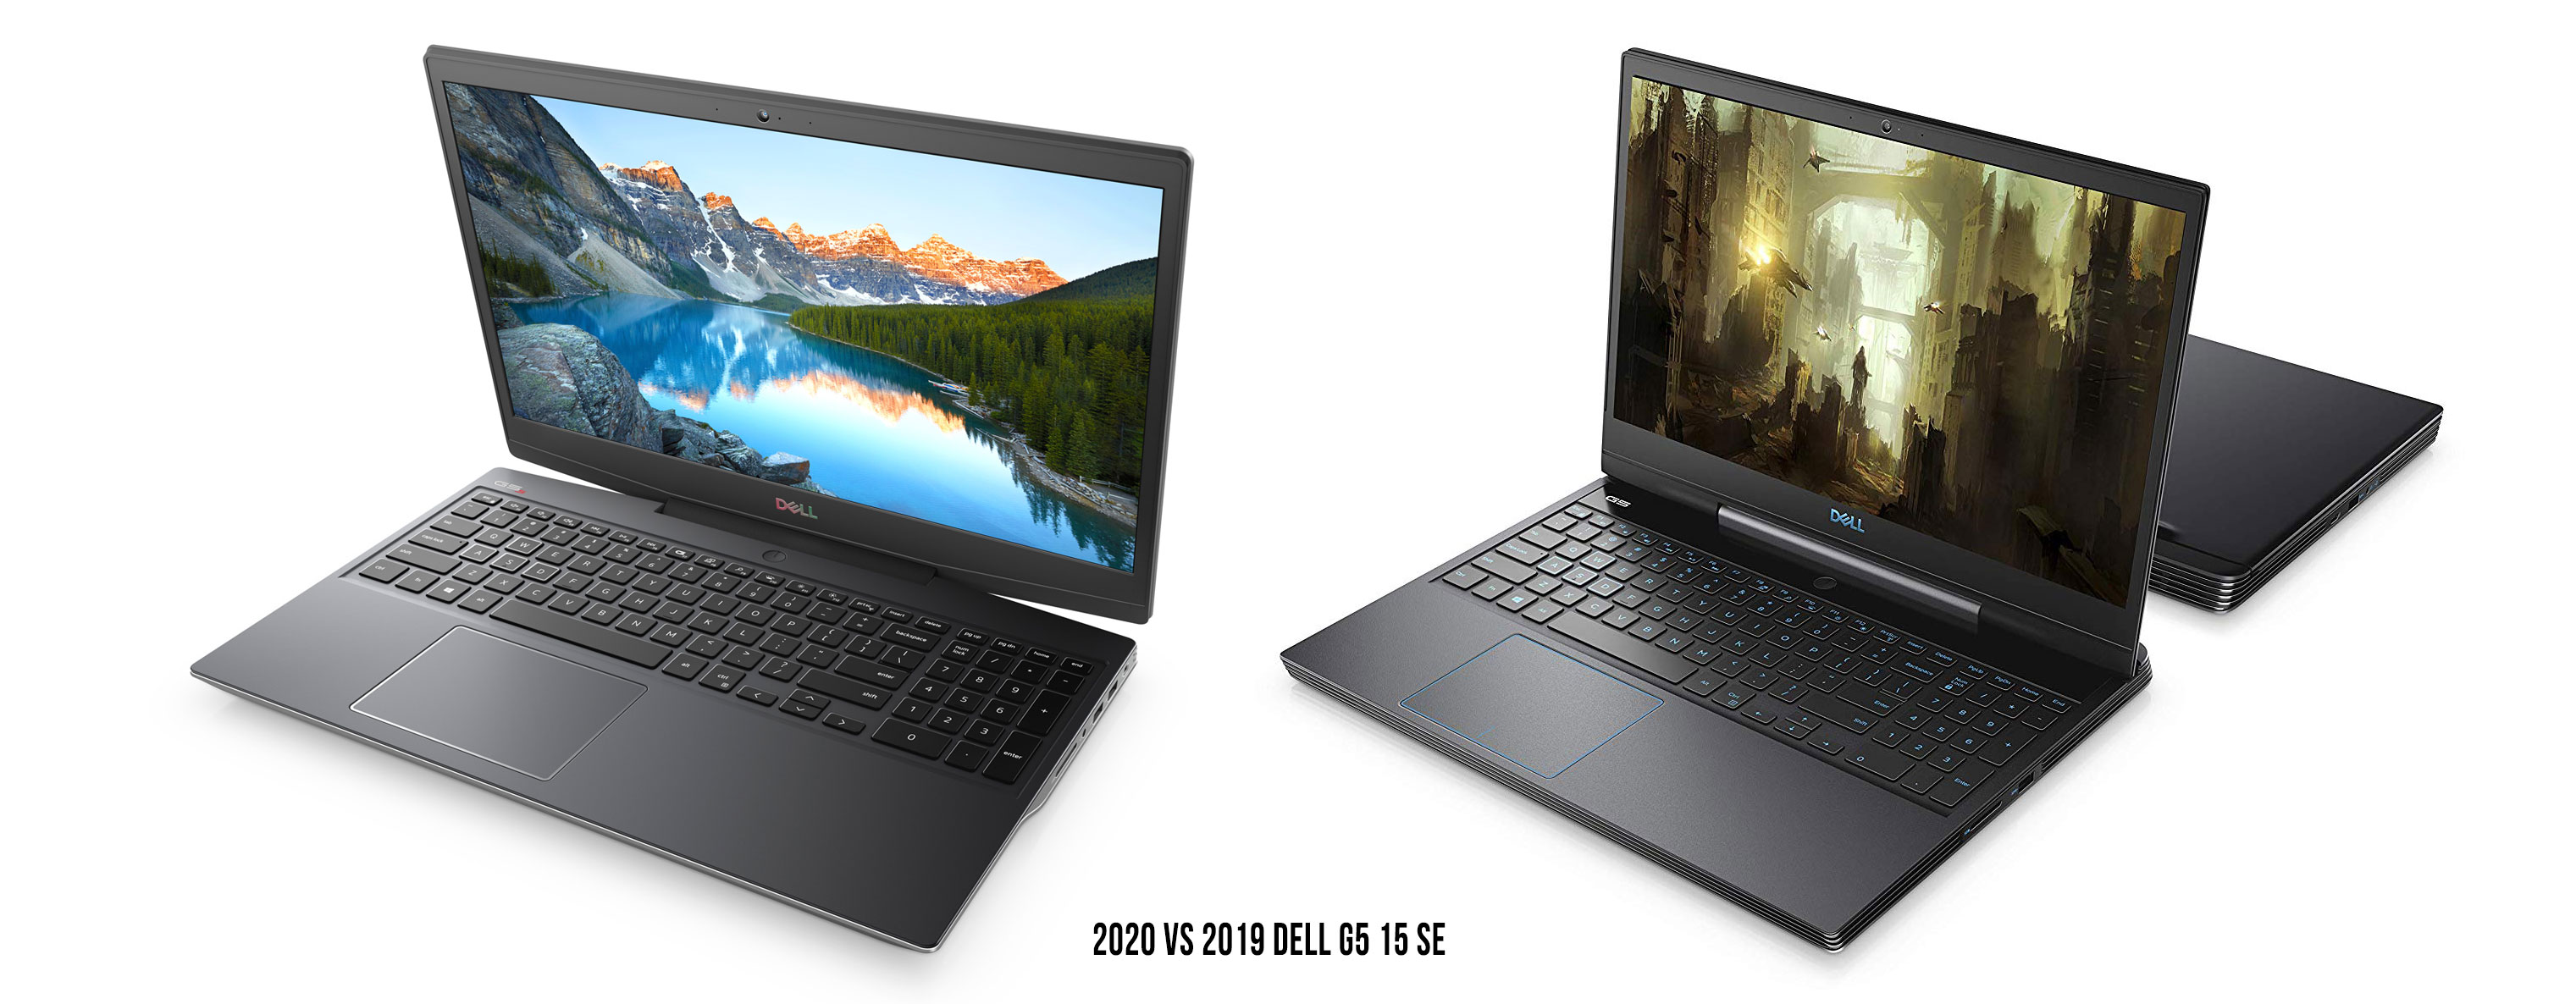 2020 Dell G5 15 (left) vs 2019 version (right)